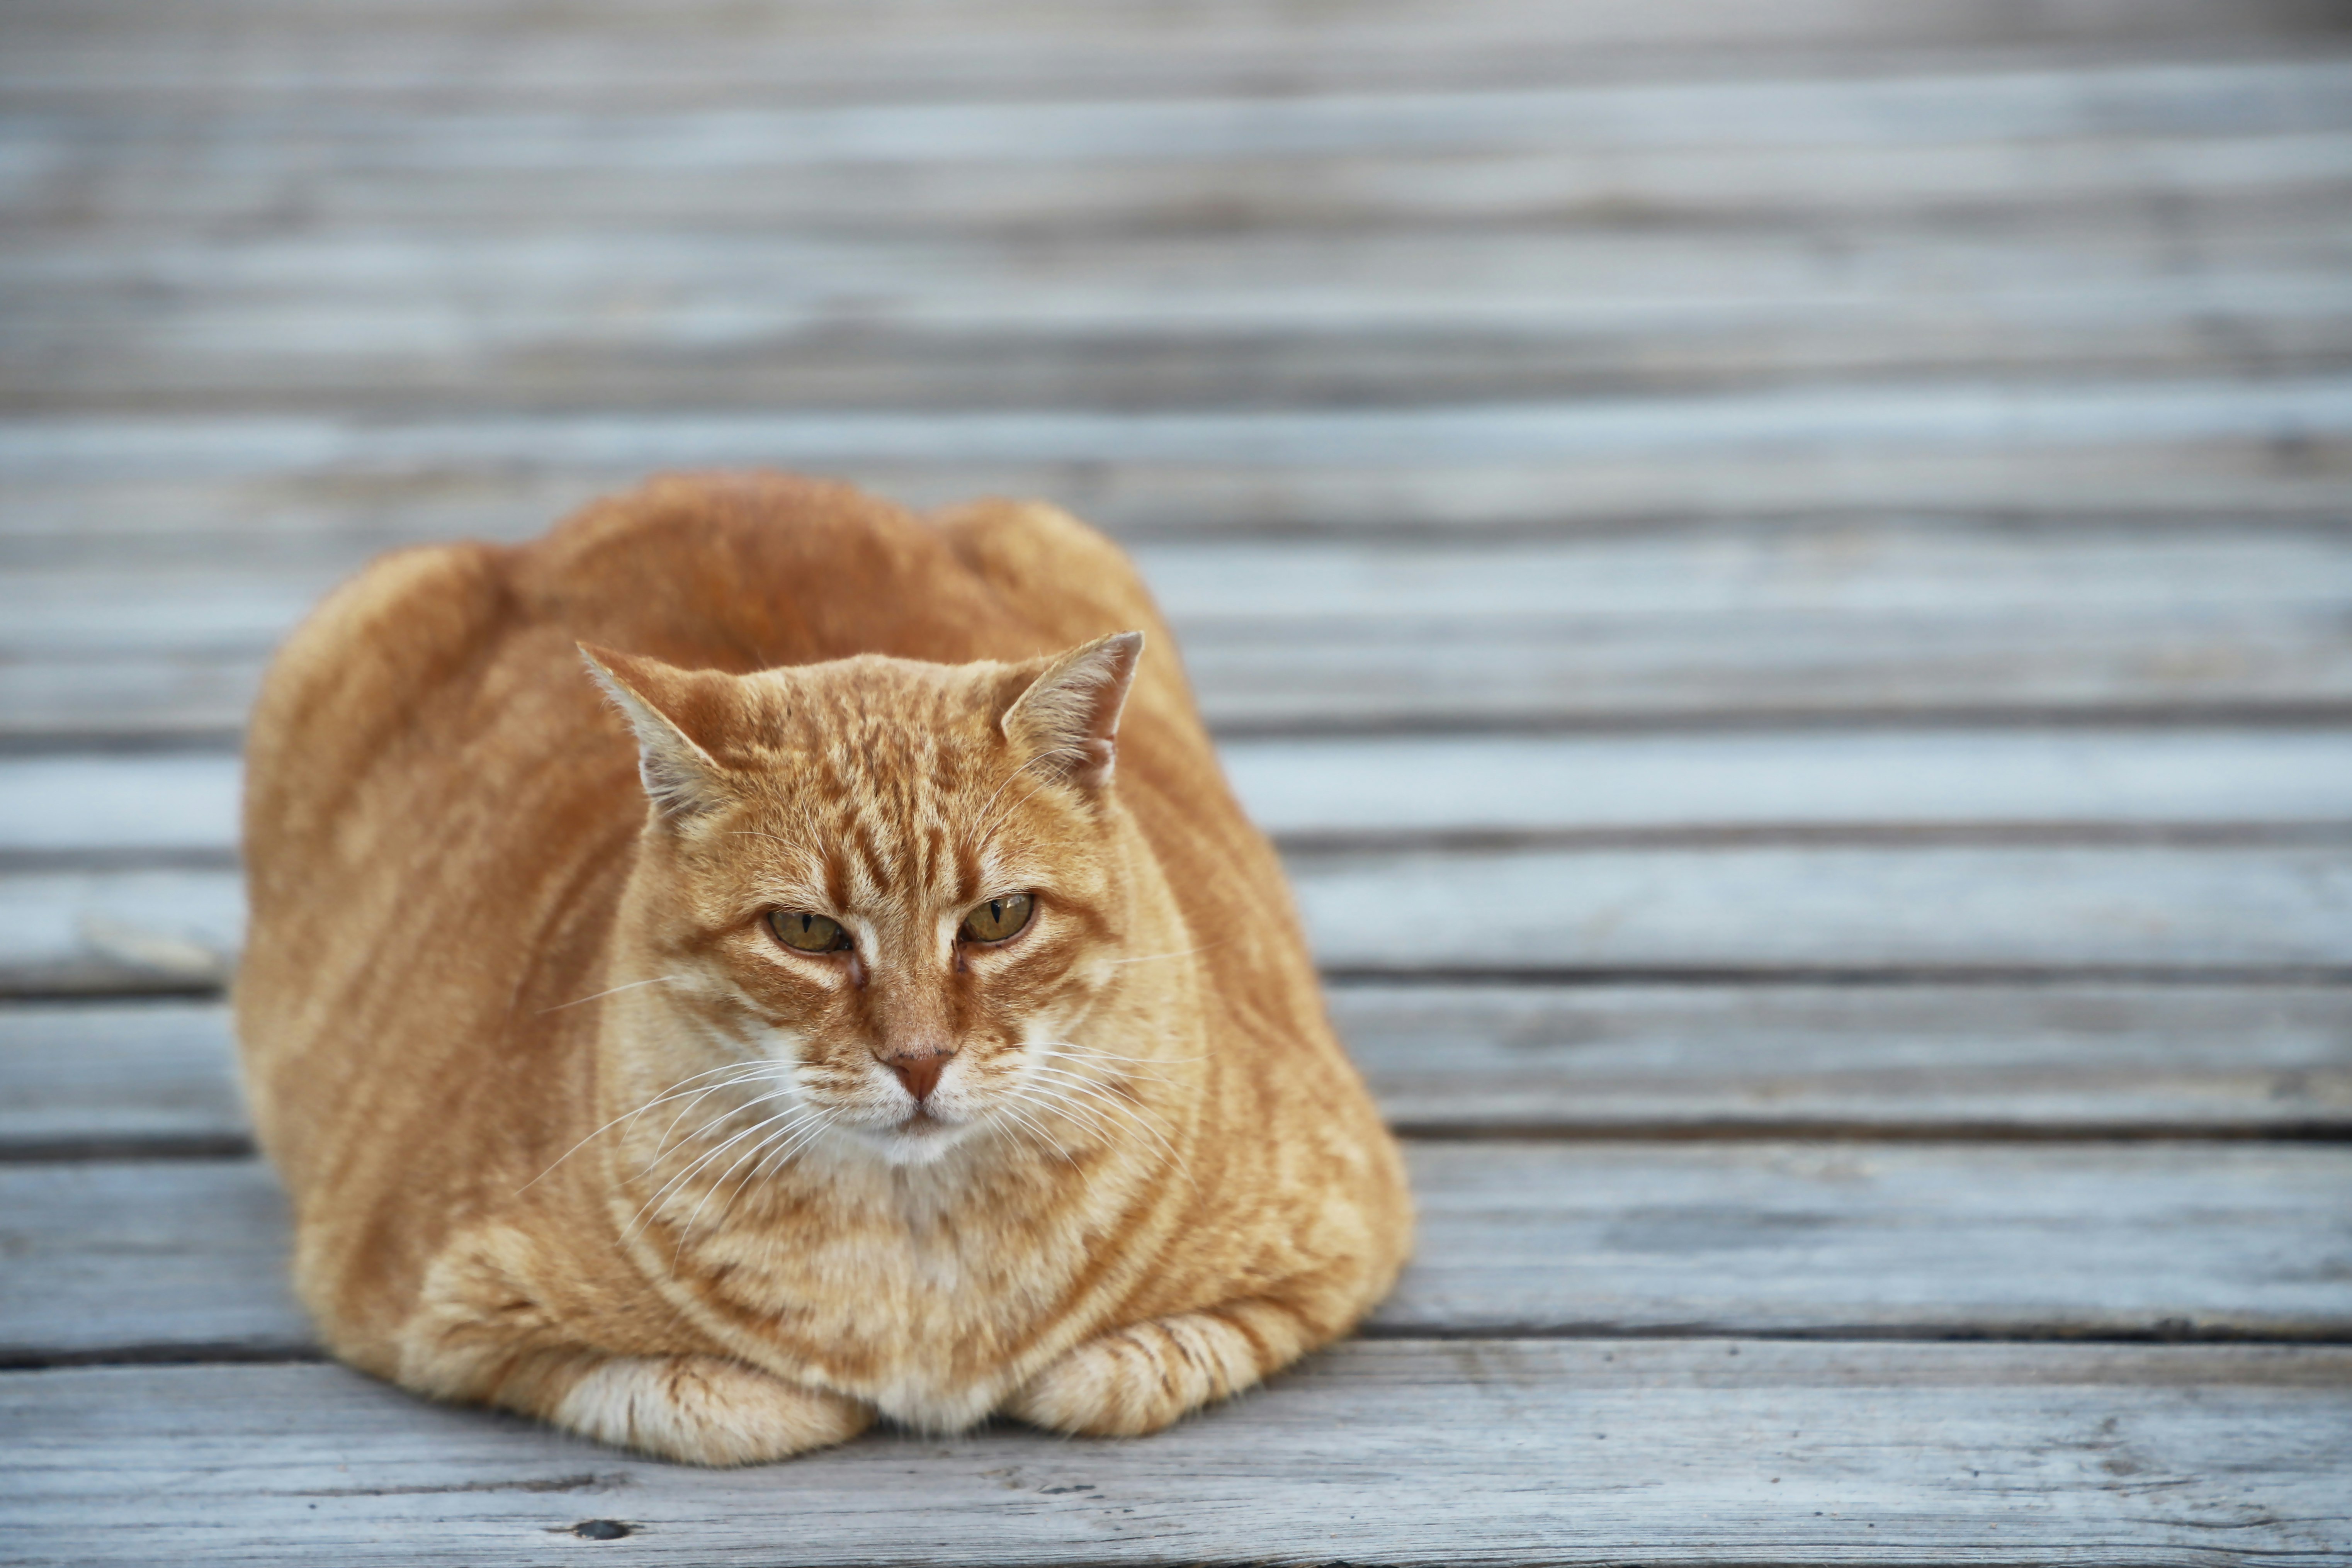 orange tabby cat on wooden floor